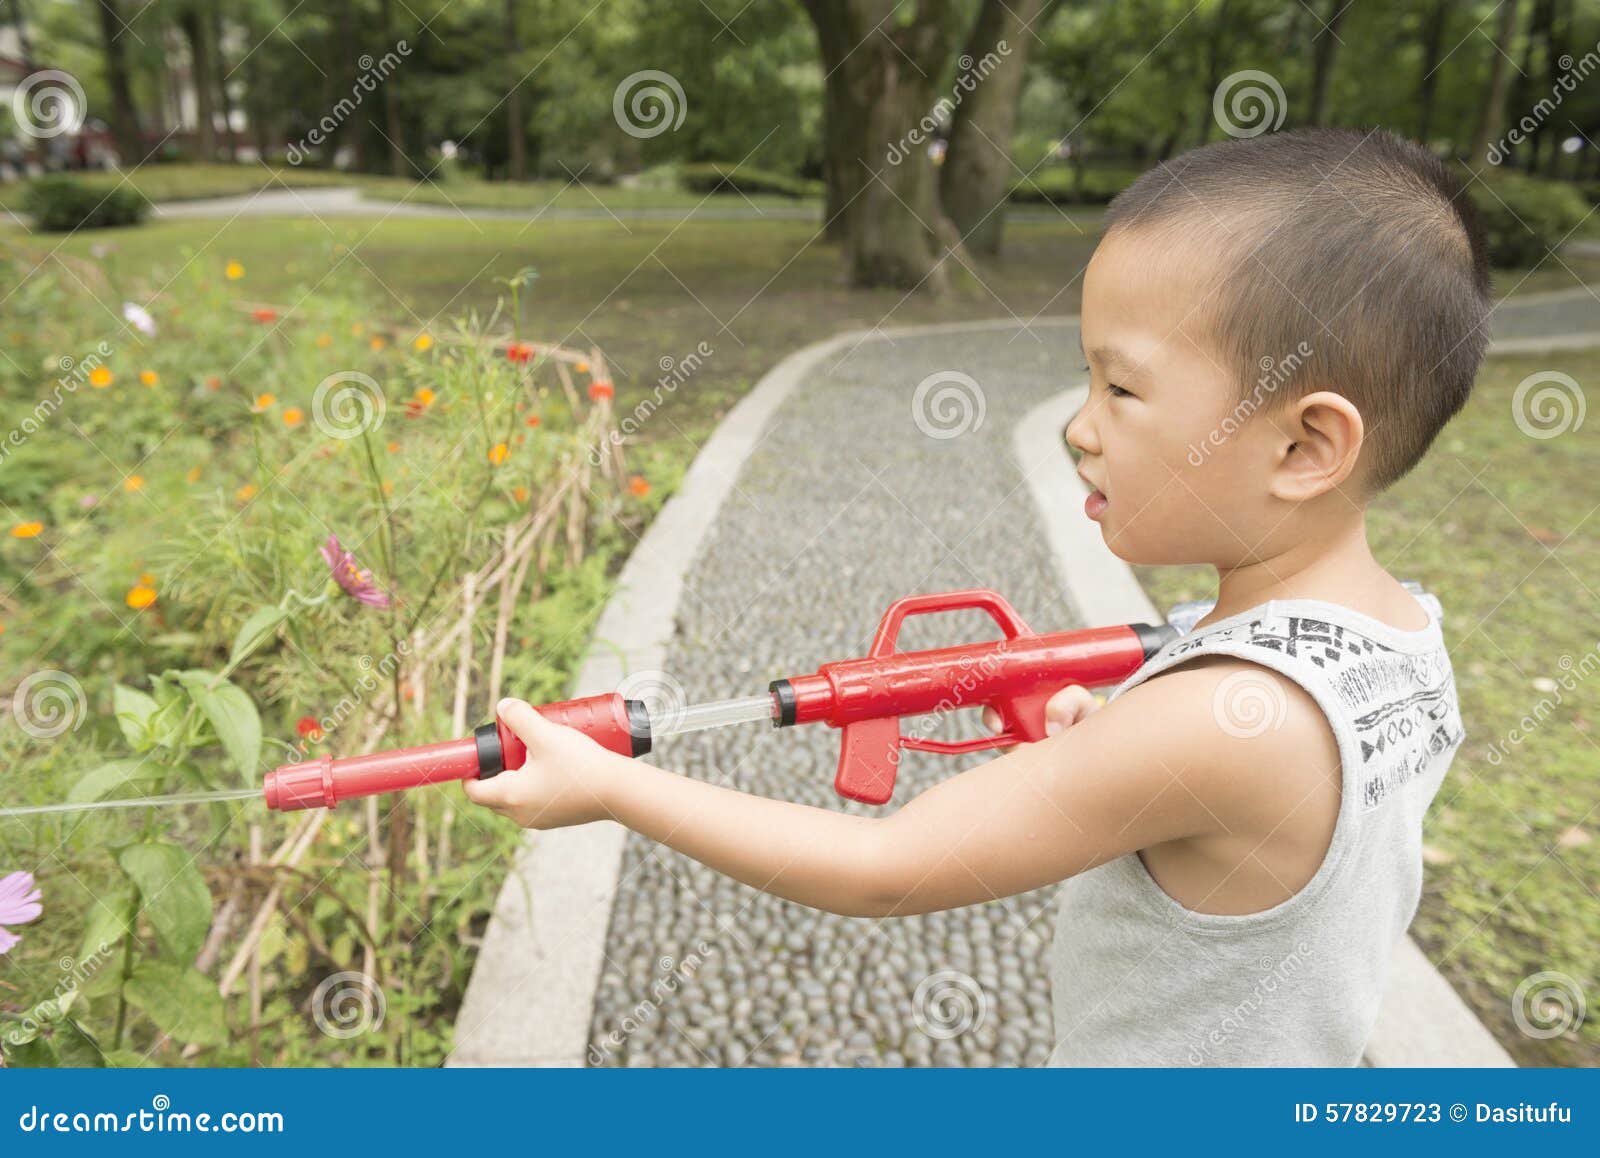 Αγόρι όπως τον πράκτορα της ασφάλειας. Κινεζικό ευτυχές πυροβόλο όπλο νερού παιχνιδιού αγοριών στο πάρκο